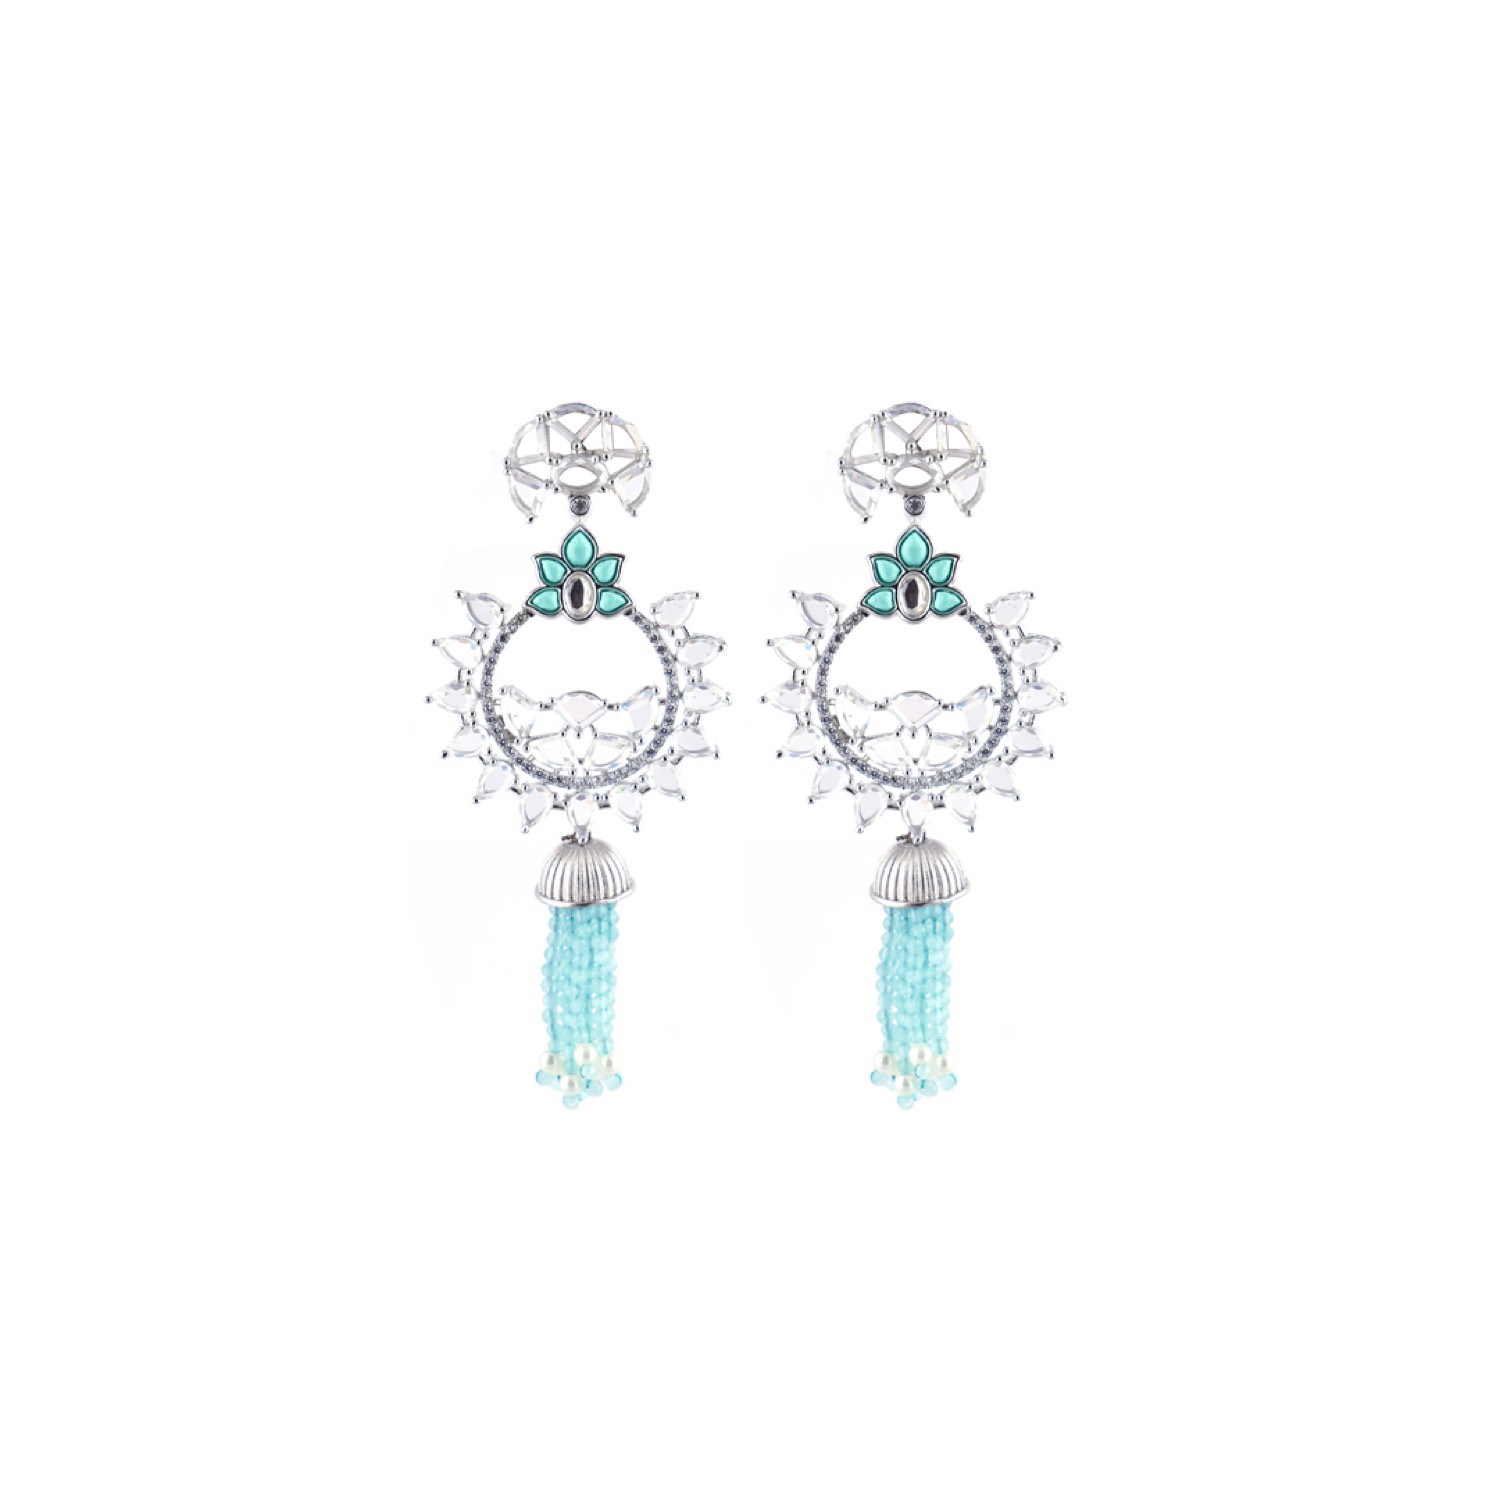 varam_earrings_102022_sky_blue_stone_geometrical_design_silver_earrings-1